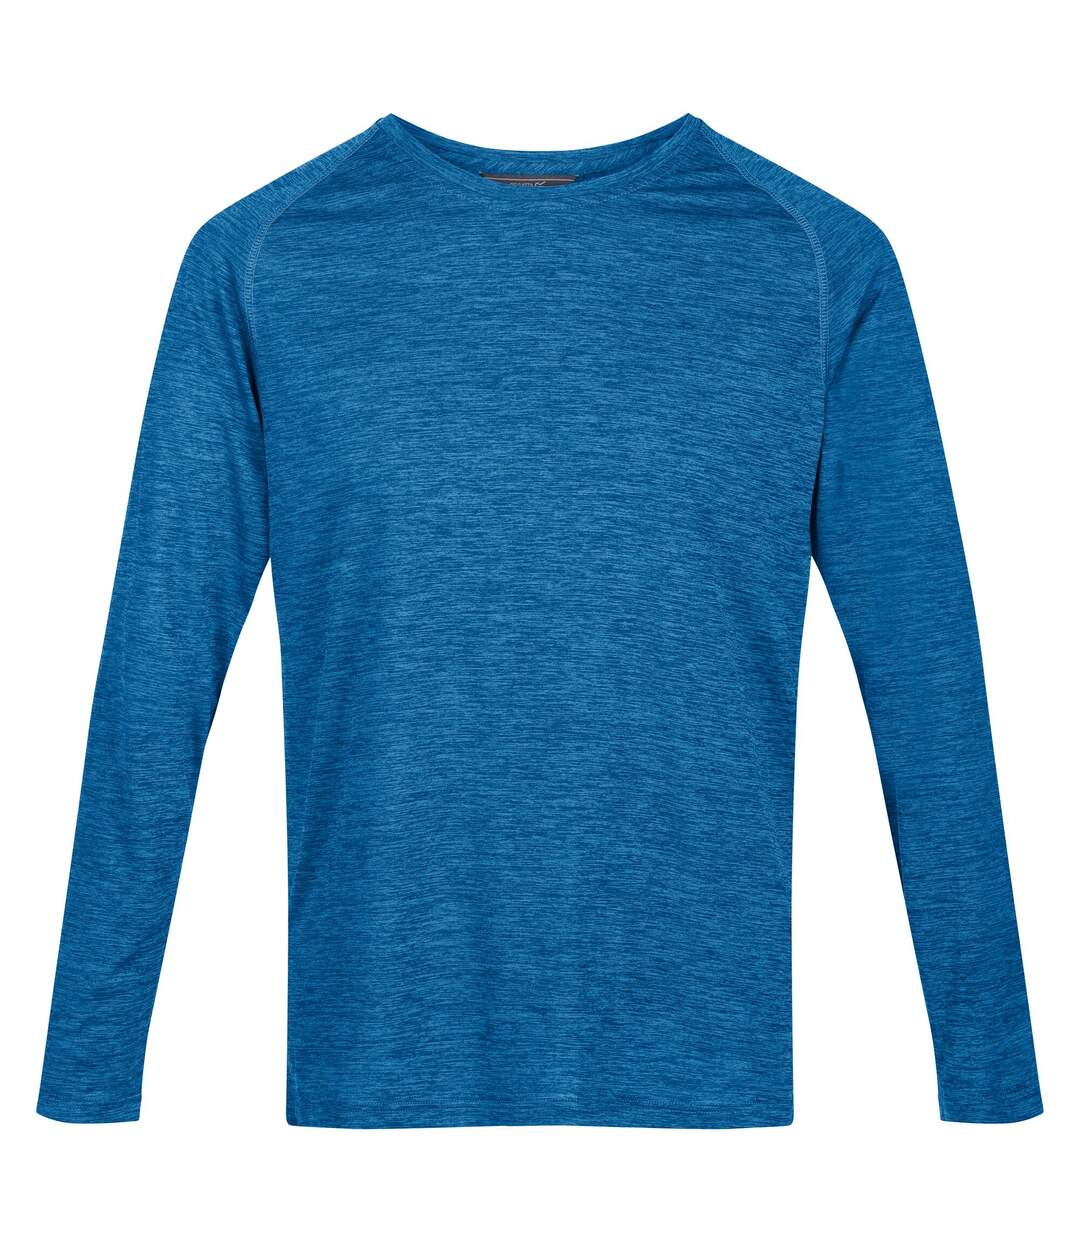 Regatta - T-shirt BURLOW - Homme (Bleu vif) - UTRG5796